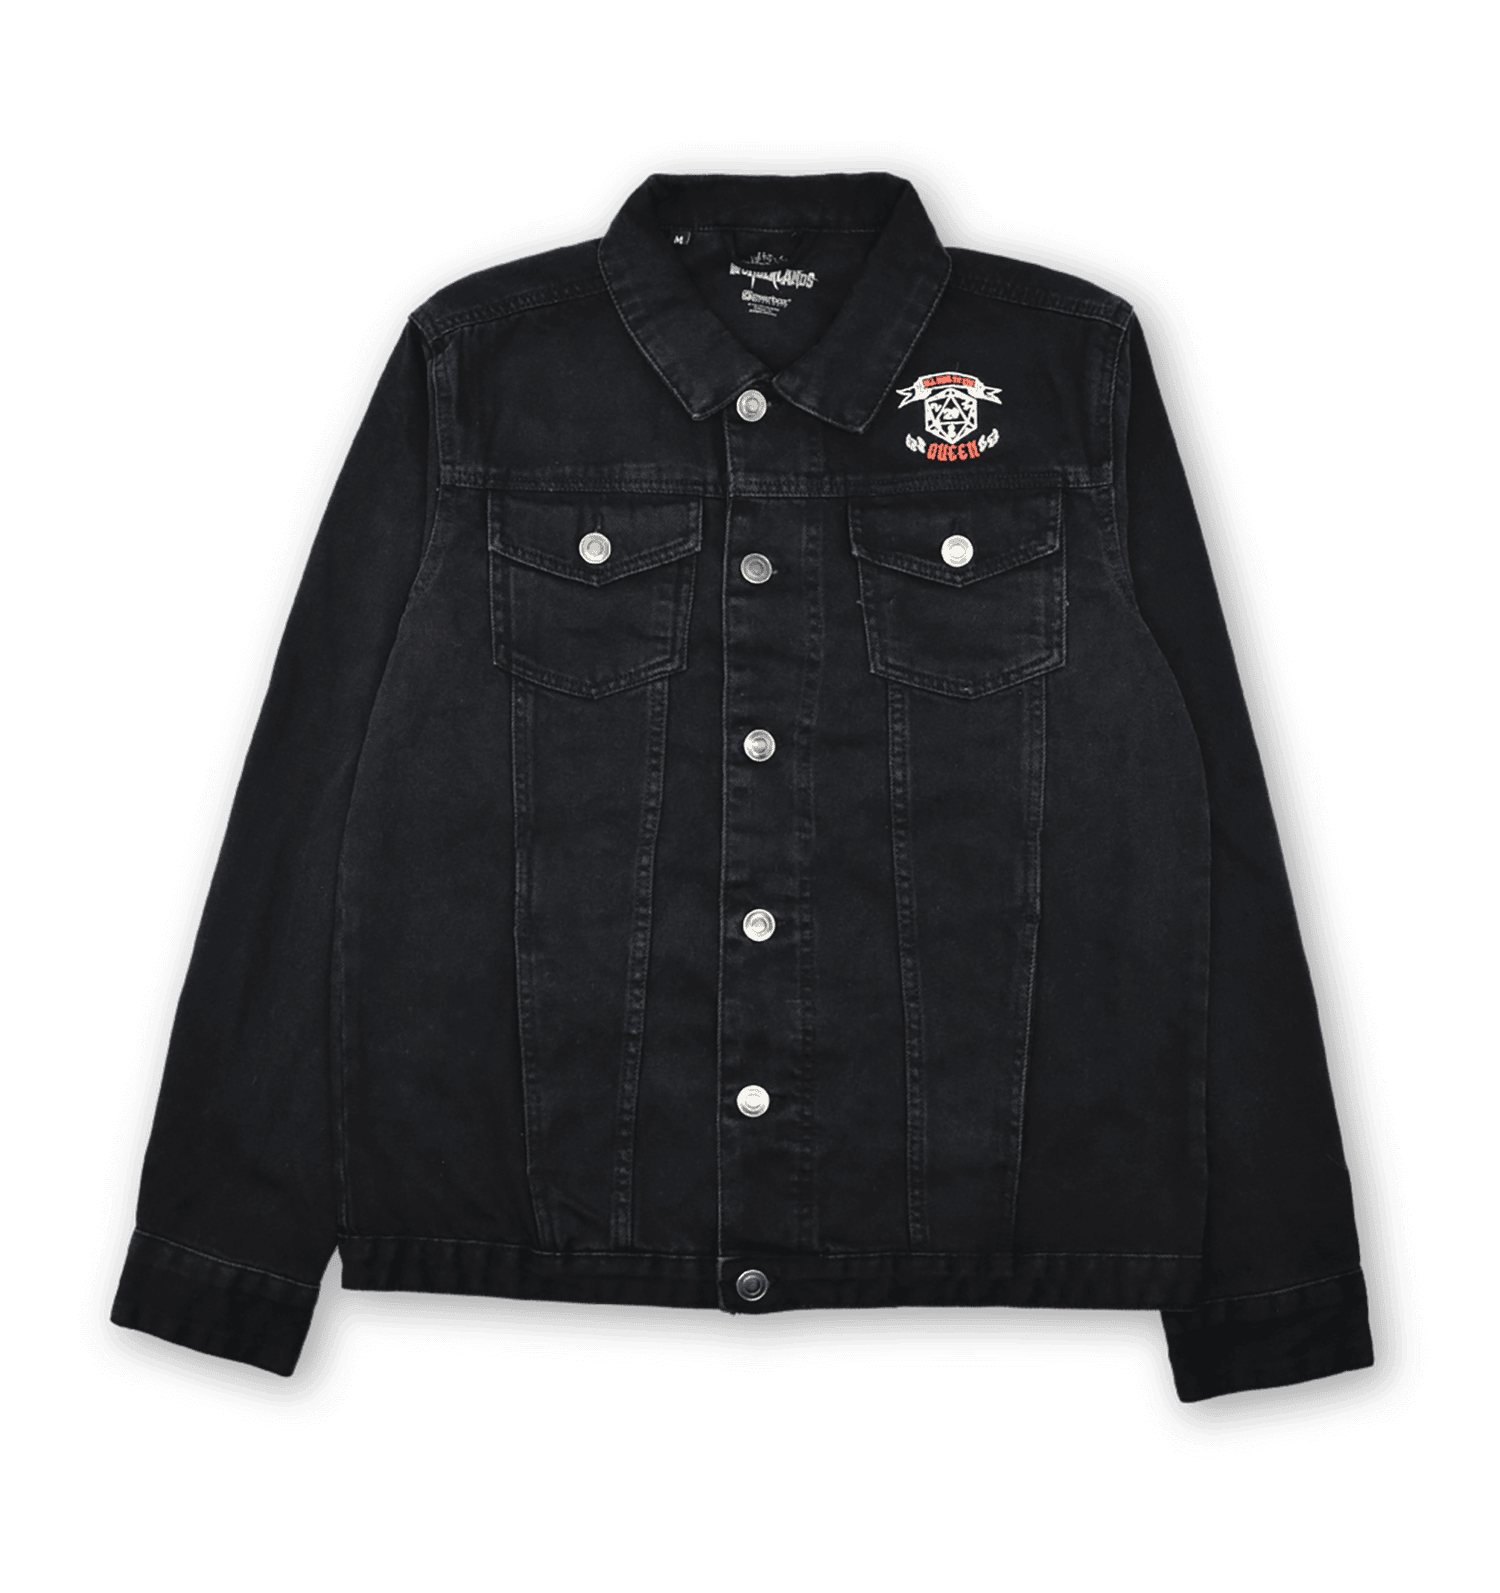 Butt Stallion PULP HORROR Embroidered Denim Jacket - Black